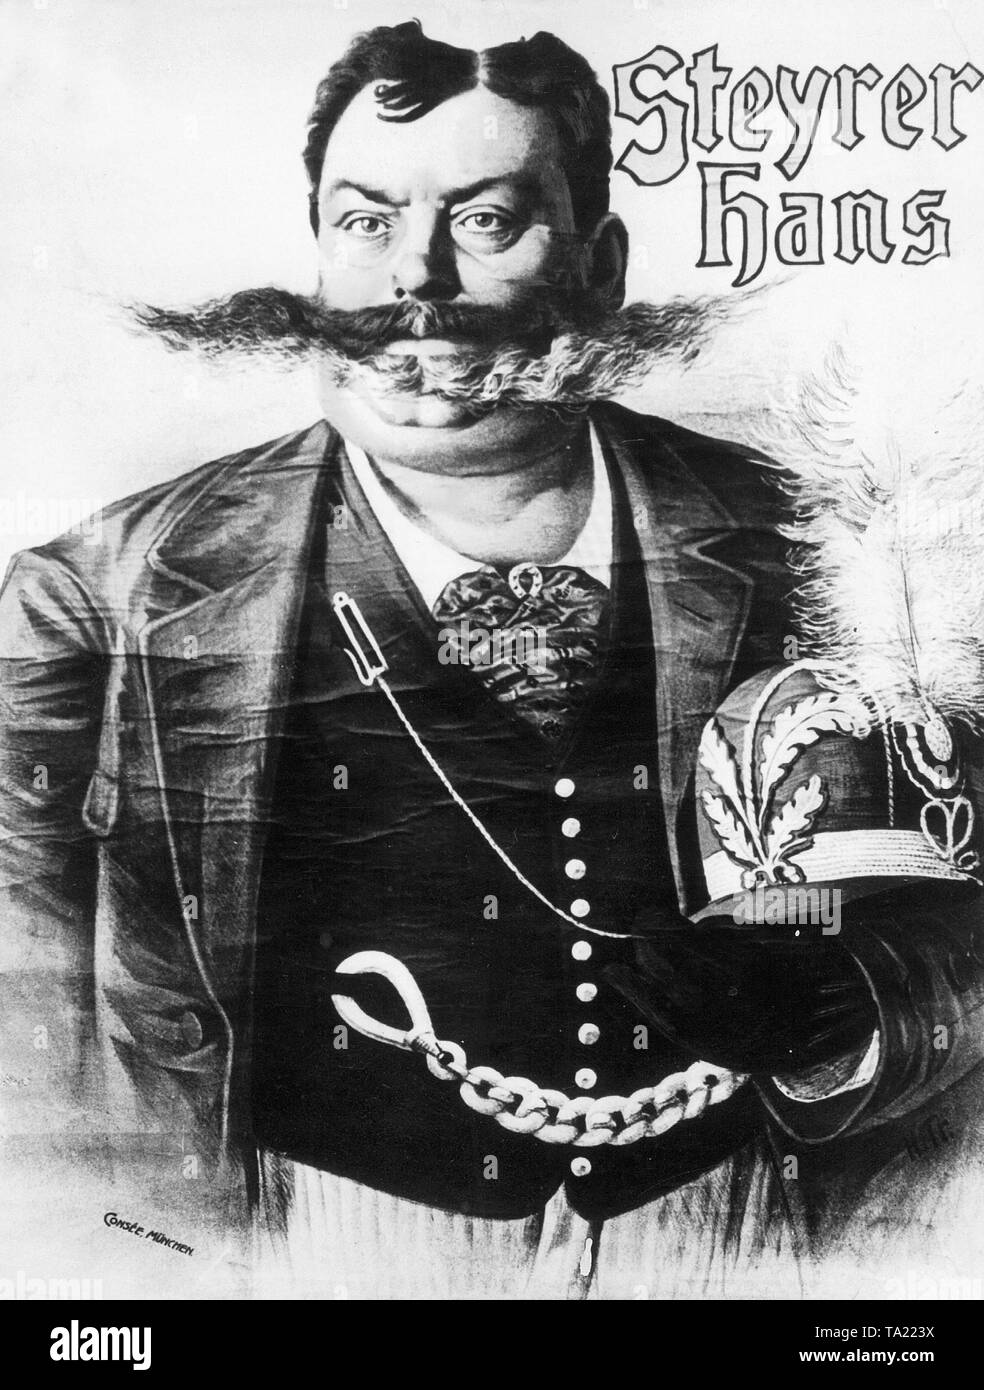 Steyrer Hans, qui se décrit lui-même comme le 'Hercules' bavarois, est apparu sur la scène à Paris, Amsterdam et Vienne dans la période avant 1914. Banque D'Images